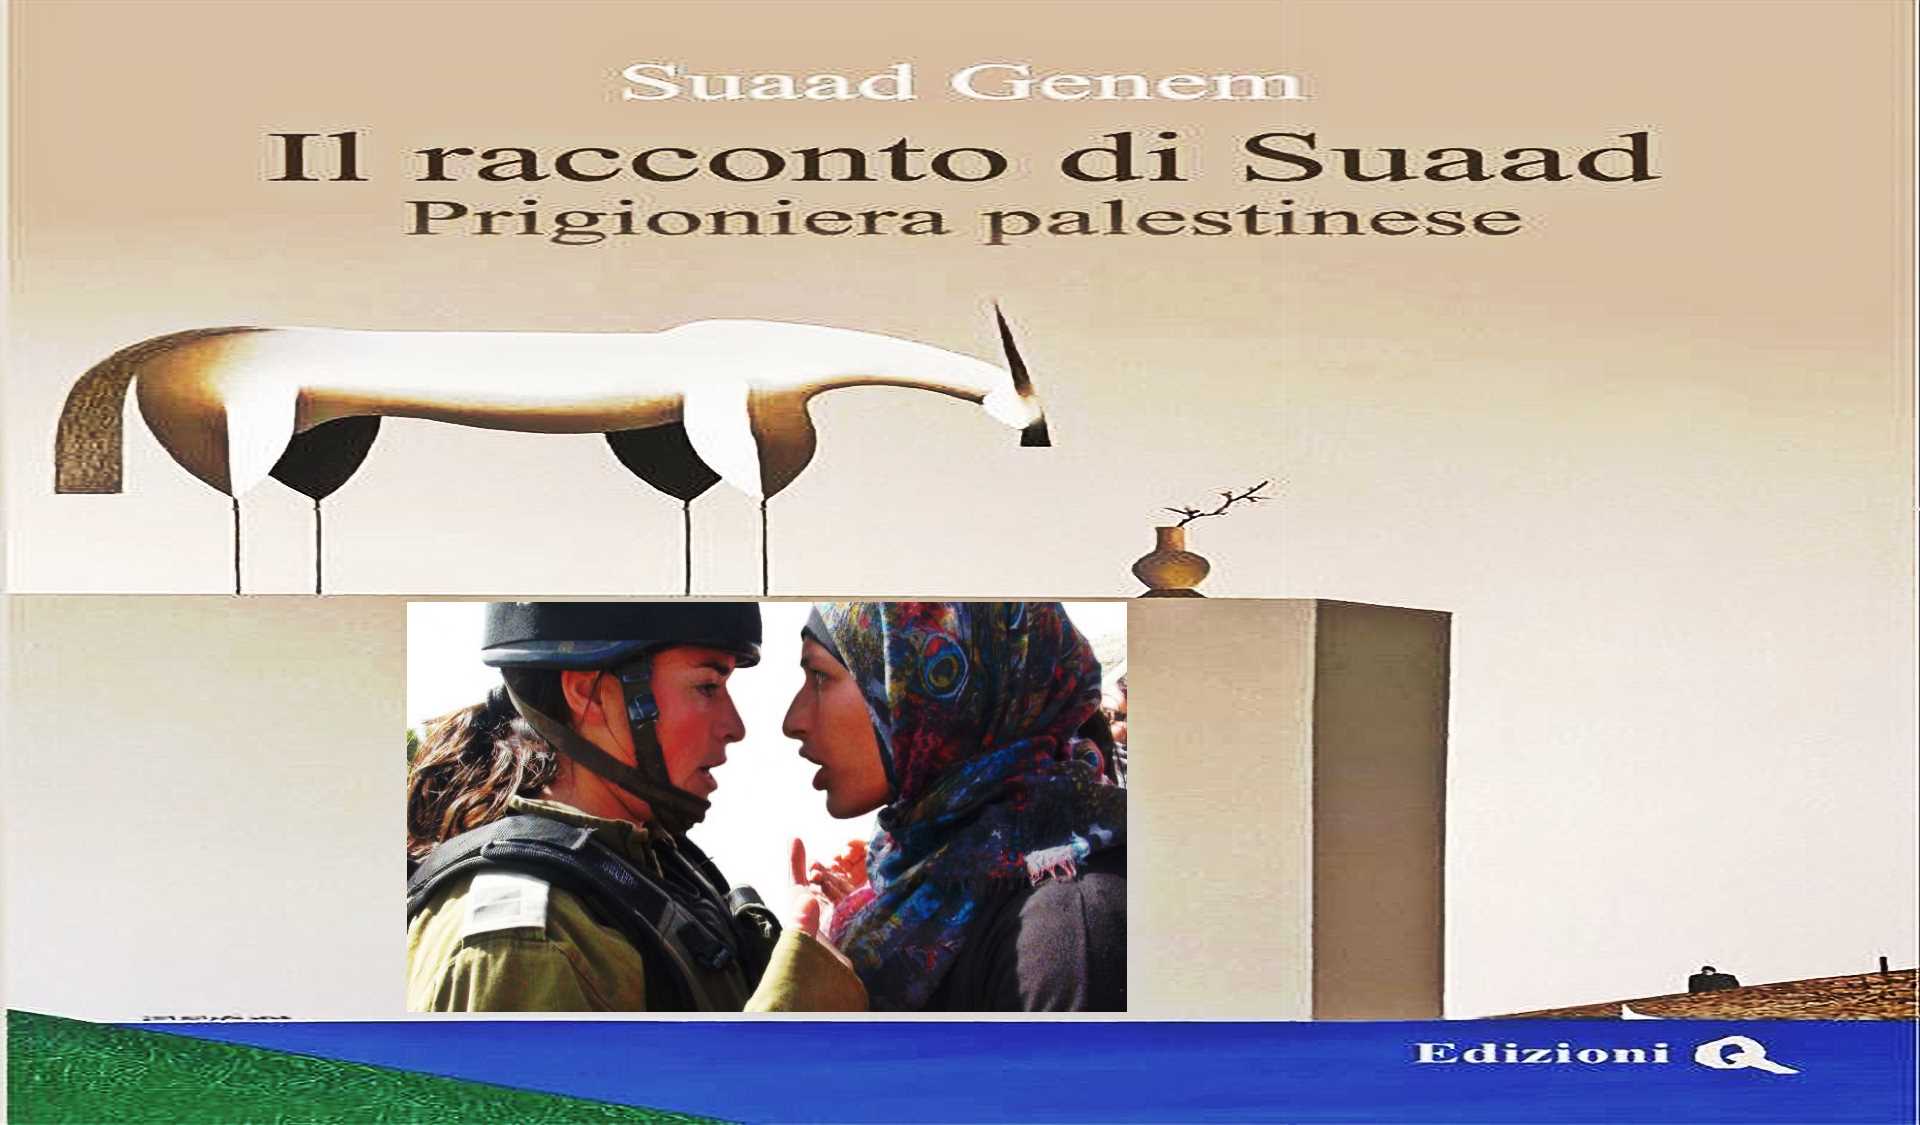 Suaad, prisonnière palestinienne